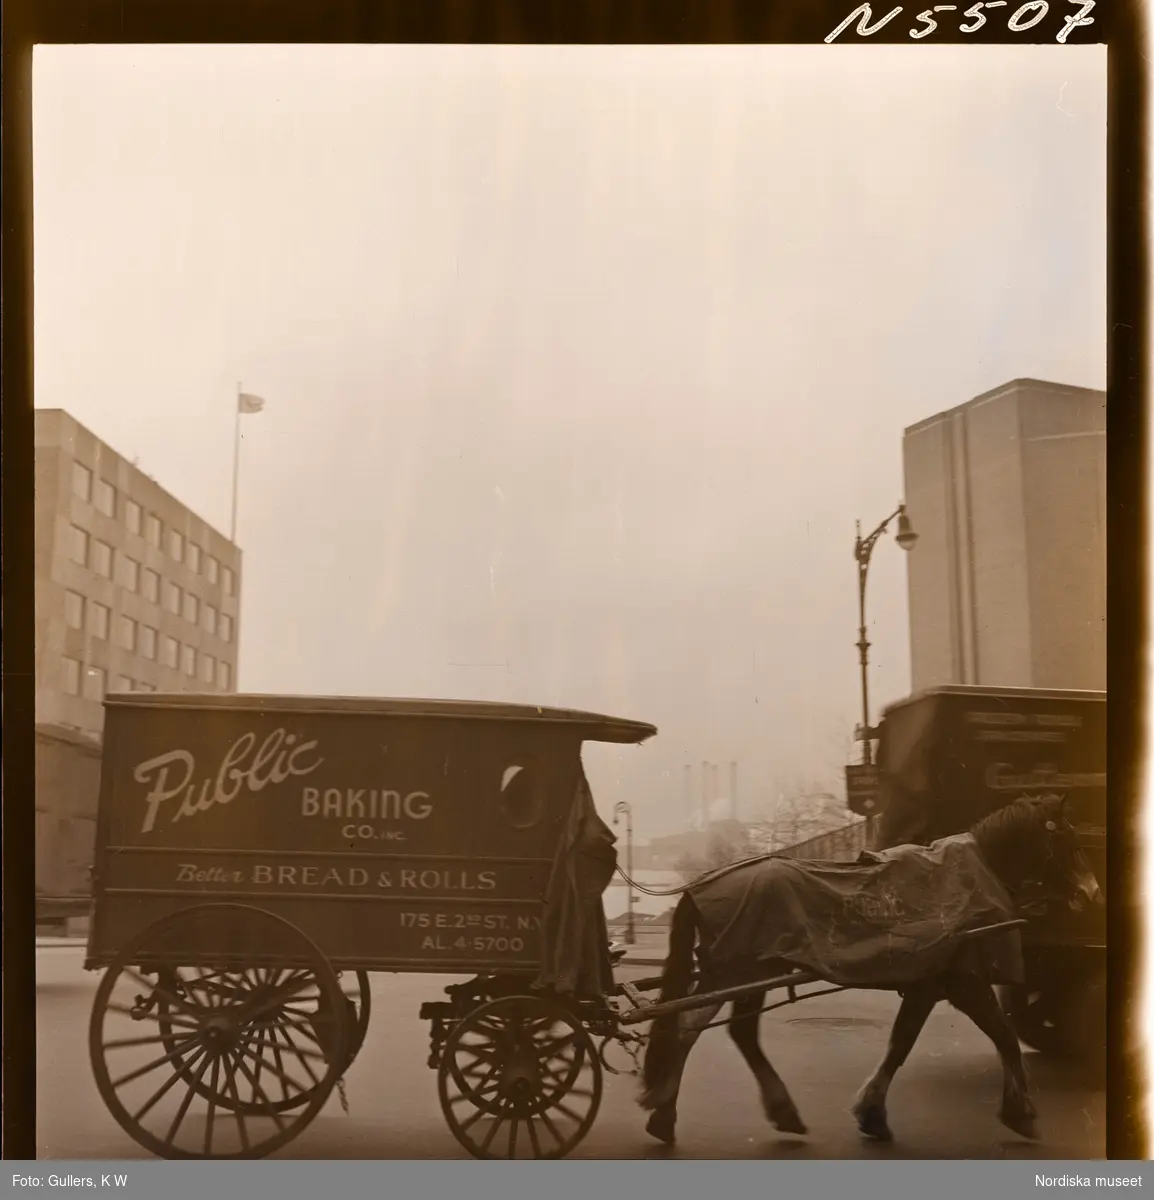 1690 New York allmänt (N.Y. Herald Tribune). Häst drar en vagn med texten "Public baking Co.inc."